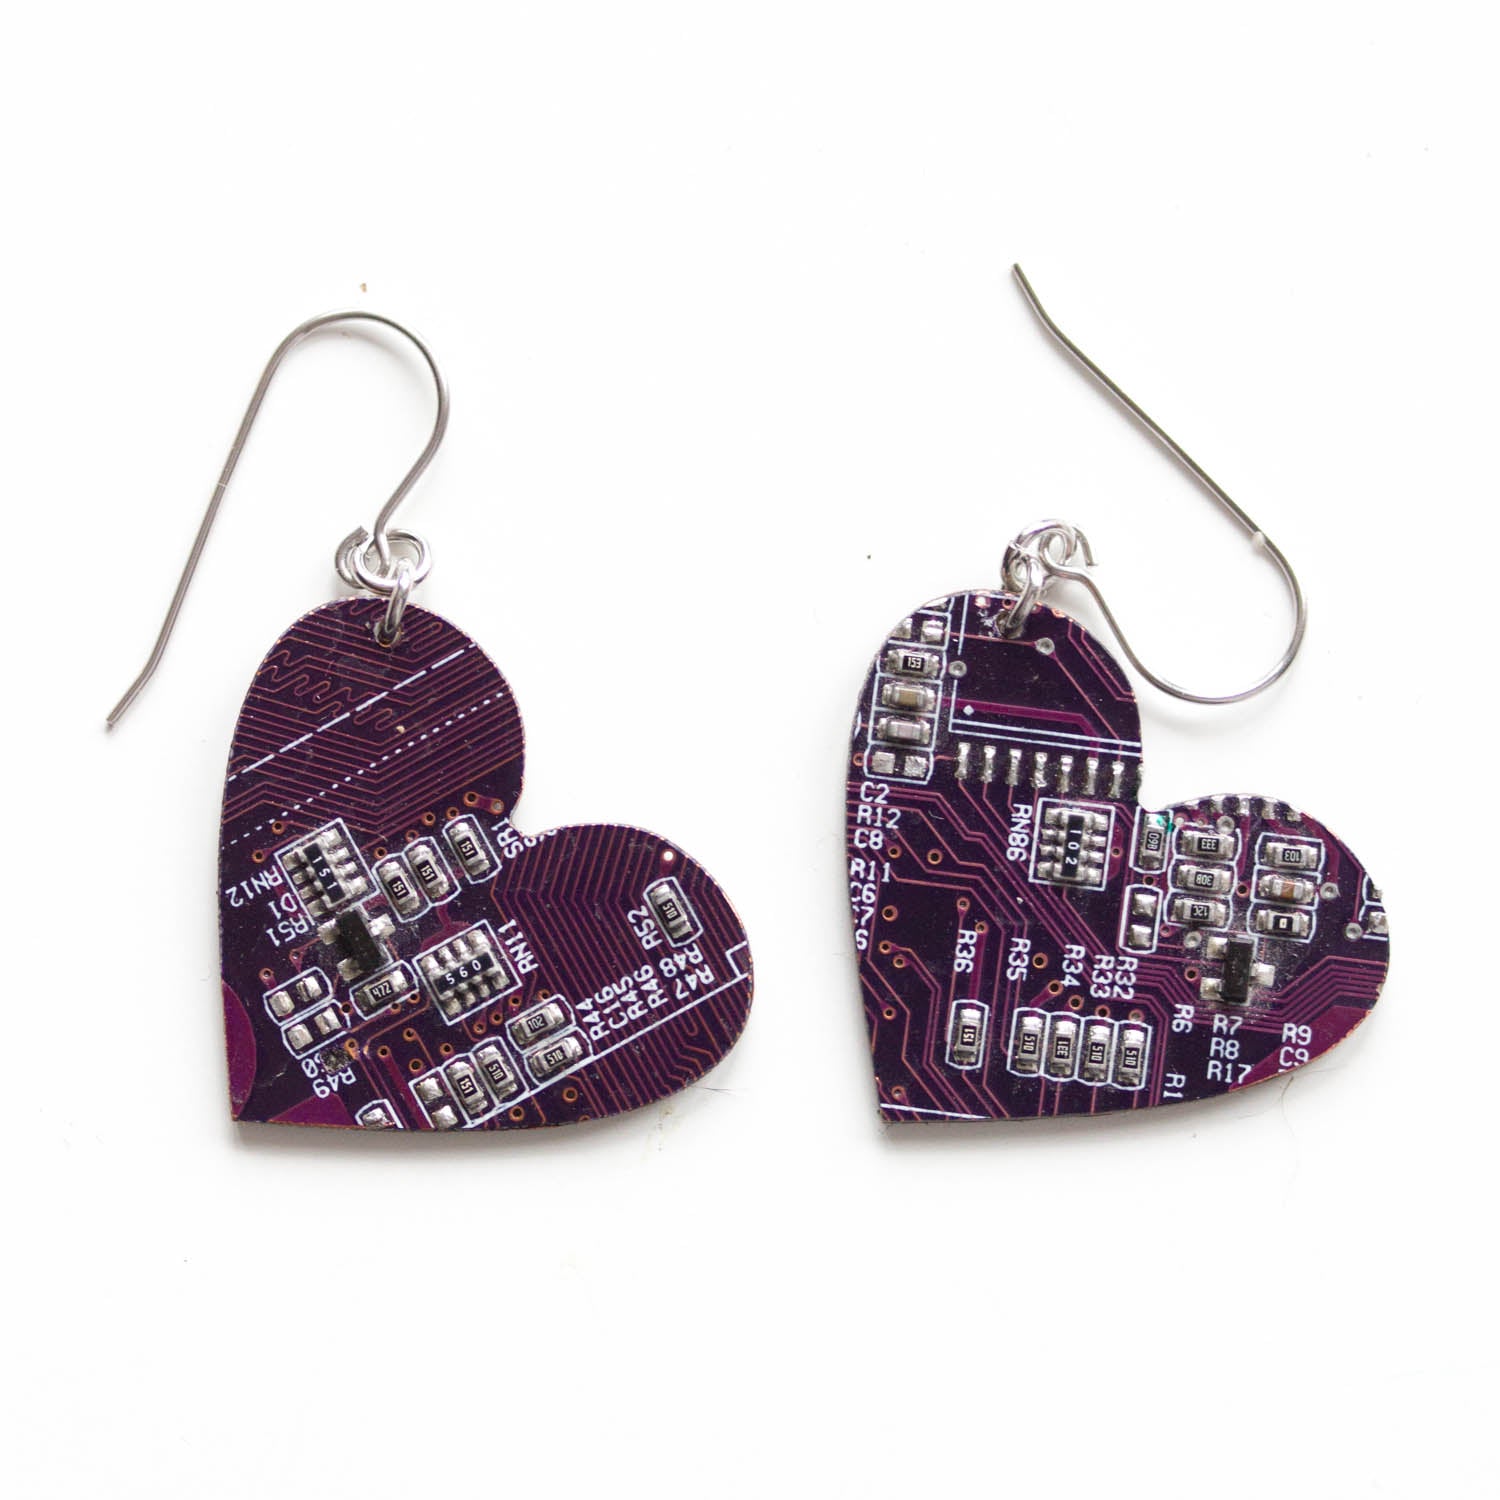 Big circuit board heart earrings